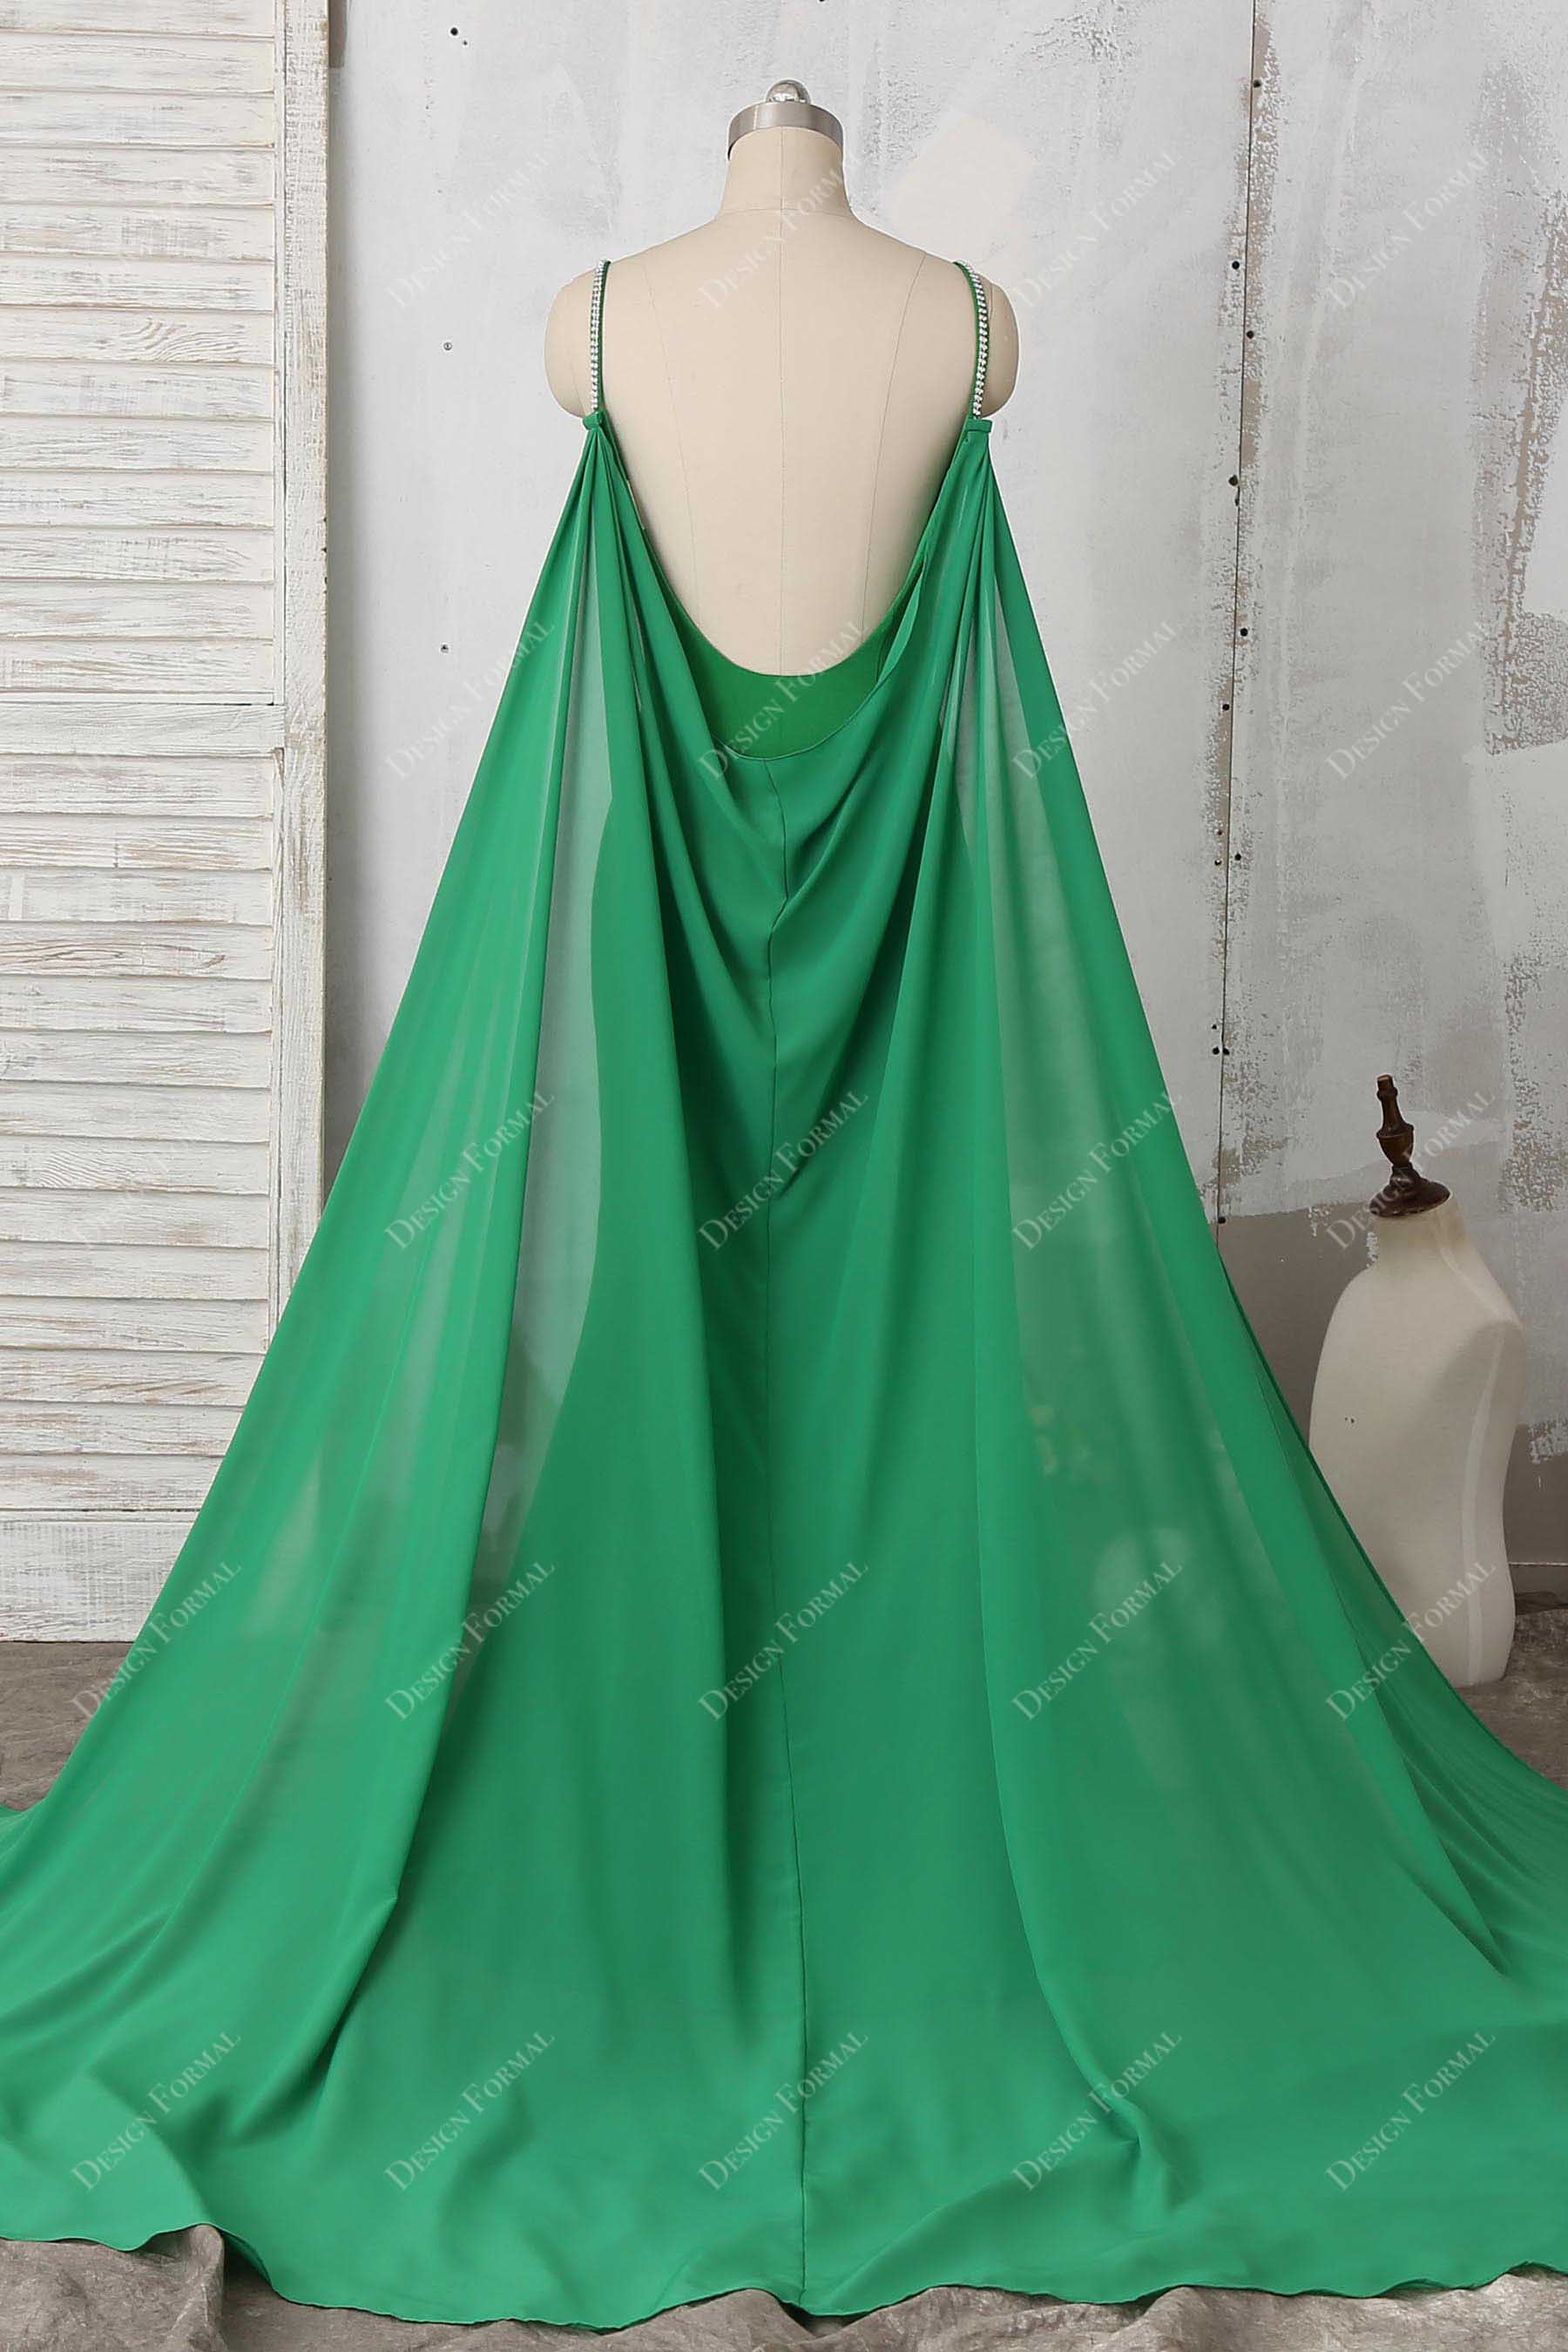 chiffon cape in emerald green color